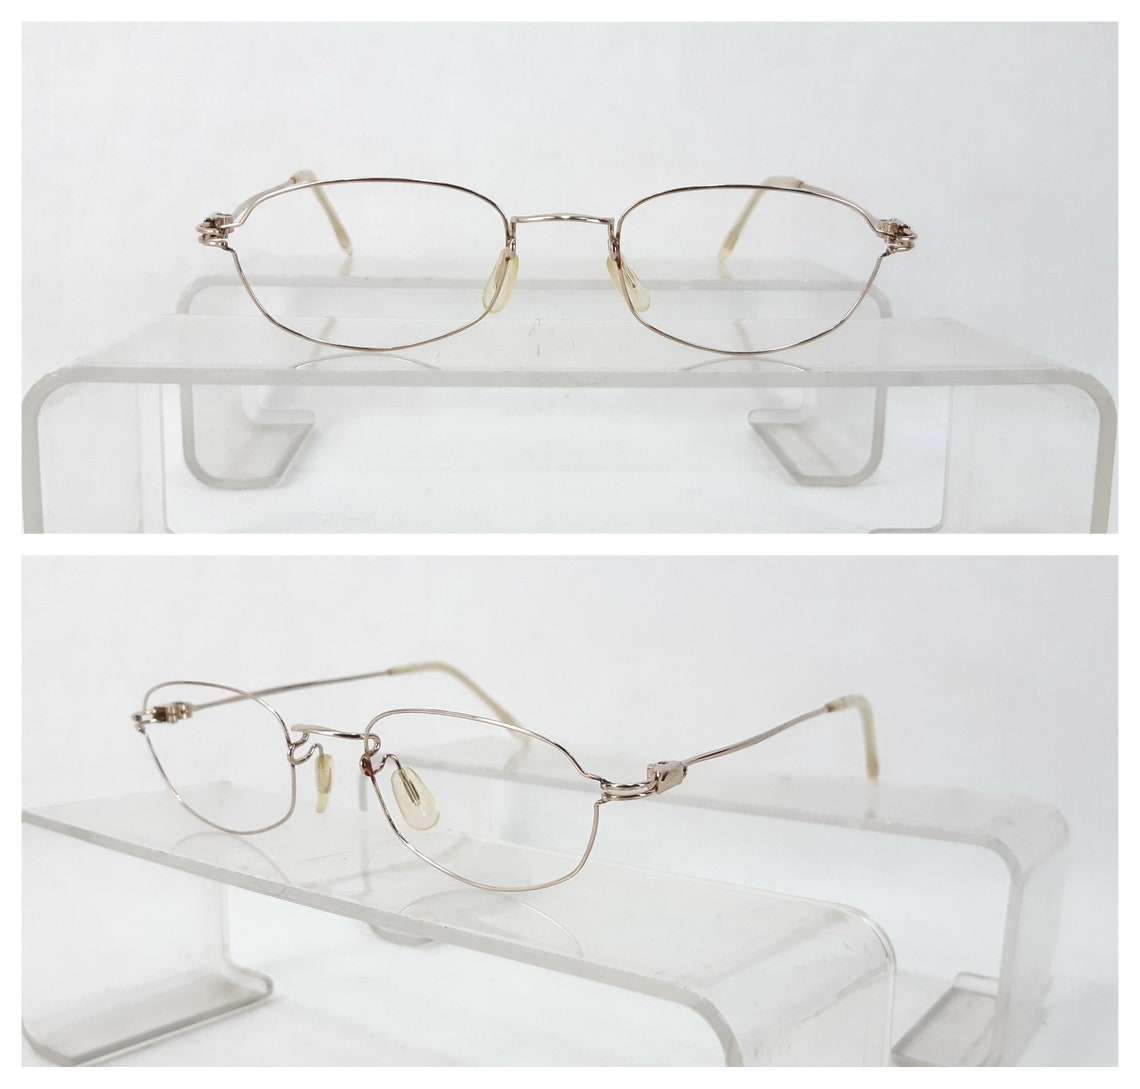 KAZUO KAWASAKI KOOKI mp-671 Japan Eyeglasses Frame | Etsy